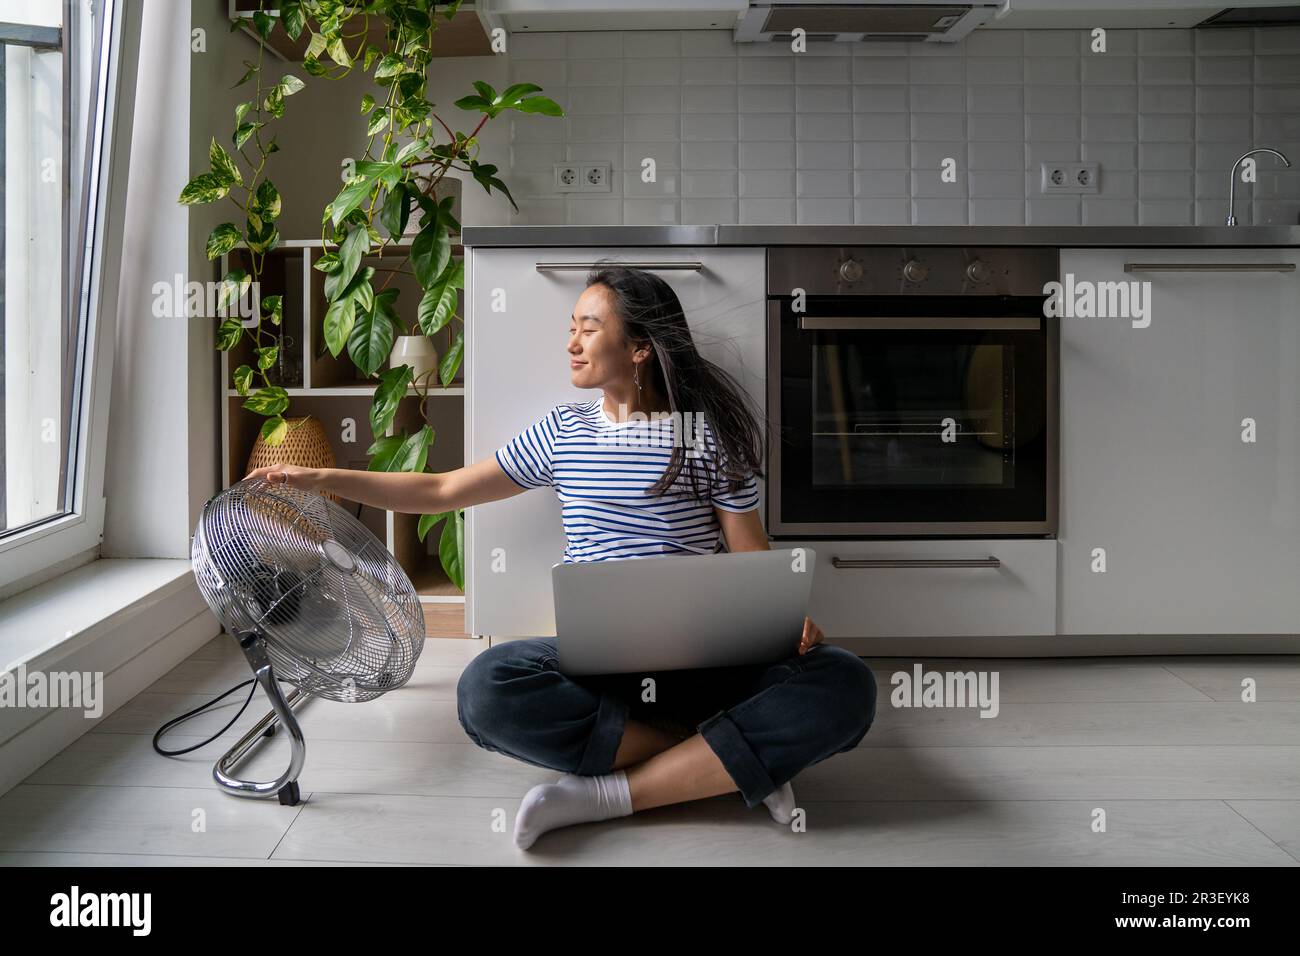 Femme asiatique confortable allumez le ventilateur de plancher tout en travaillant avec un ordinateur portable joyeuse auto-économie de la chaleur Banque D'Images